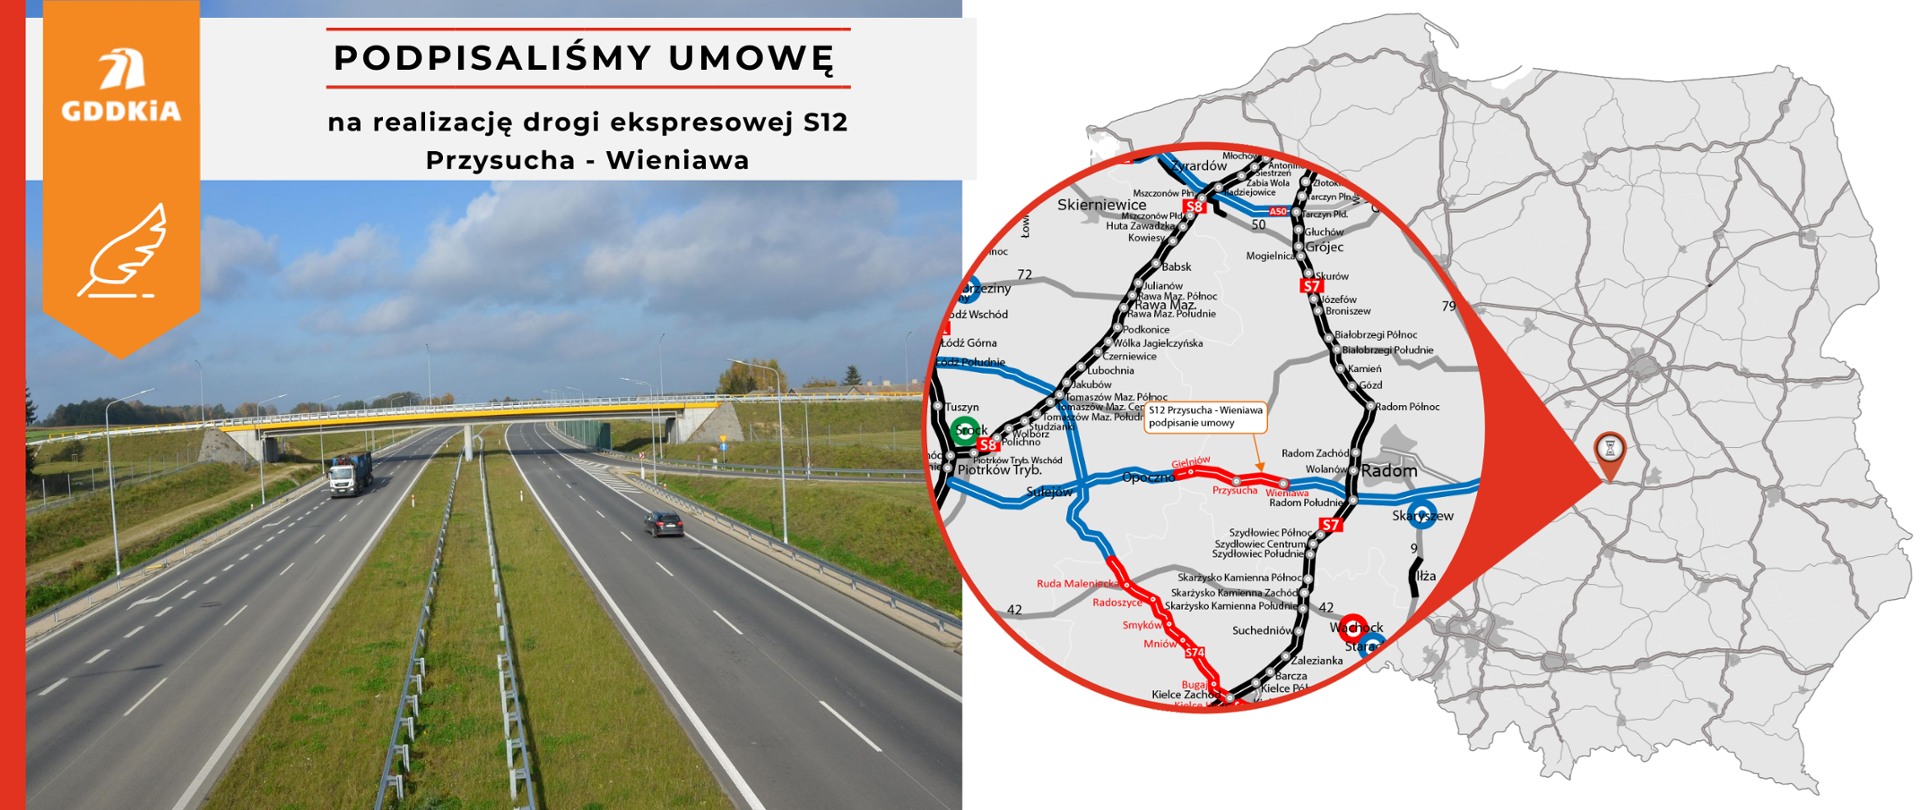 Grafika informująca o podpisaniu umowy na realizację drogi ekspresowej S12 na odcinku Przysucha - Wieniawa. Po prawej mapa Polski z zaznaczonym odcinkiem drogi ekspresowej. Po lewej zdjęcie poglądowe drogi ekspresowej S12. Dwujezdniowa droga ekspresowa po dwa pasy ruchu w obu kierunkach. Nad drogą przechodzi wiadukt.